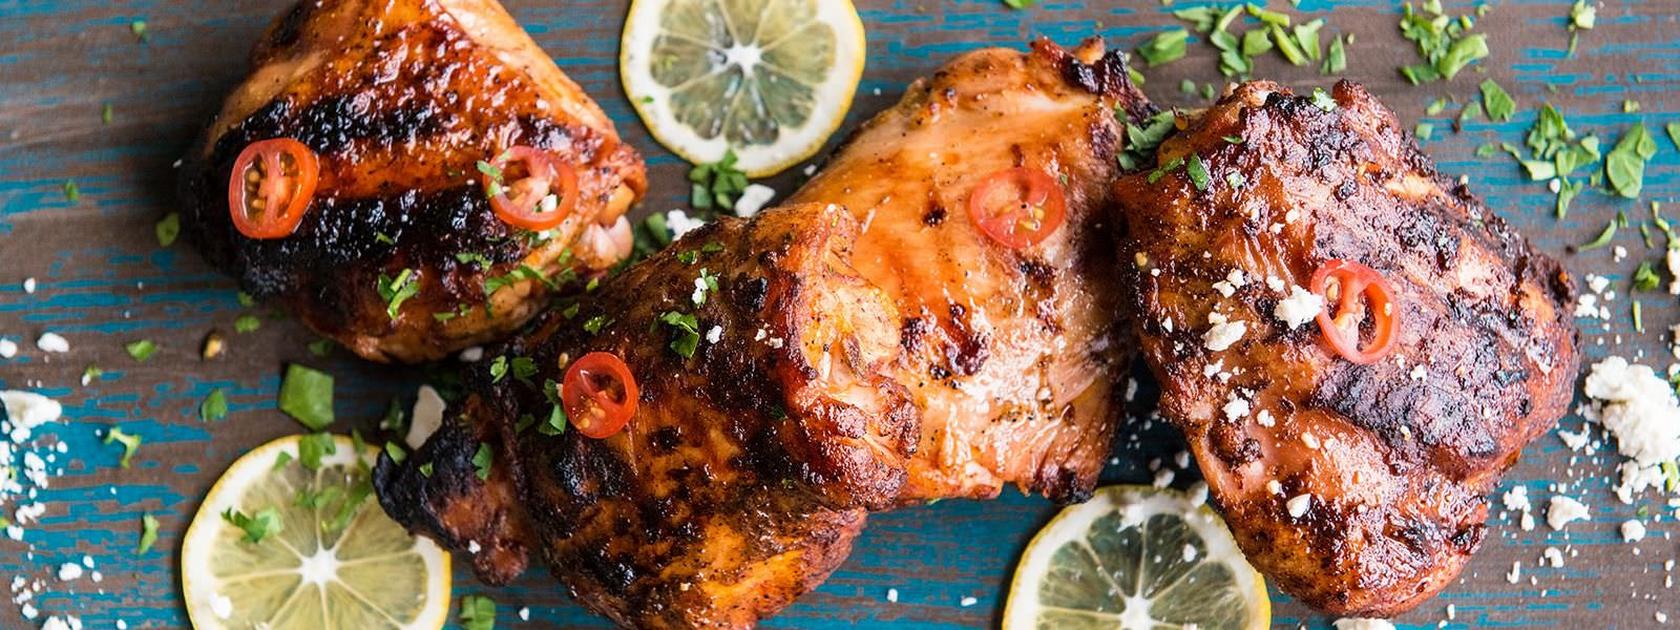 Grilled Greek Chicken with Garlic & Lemon